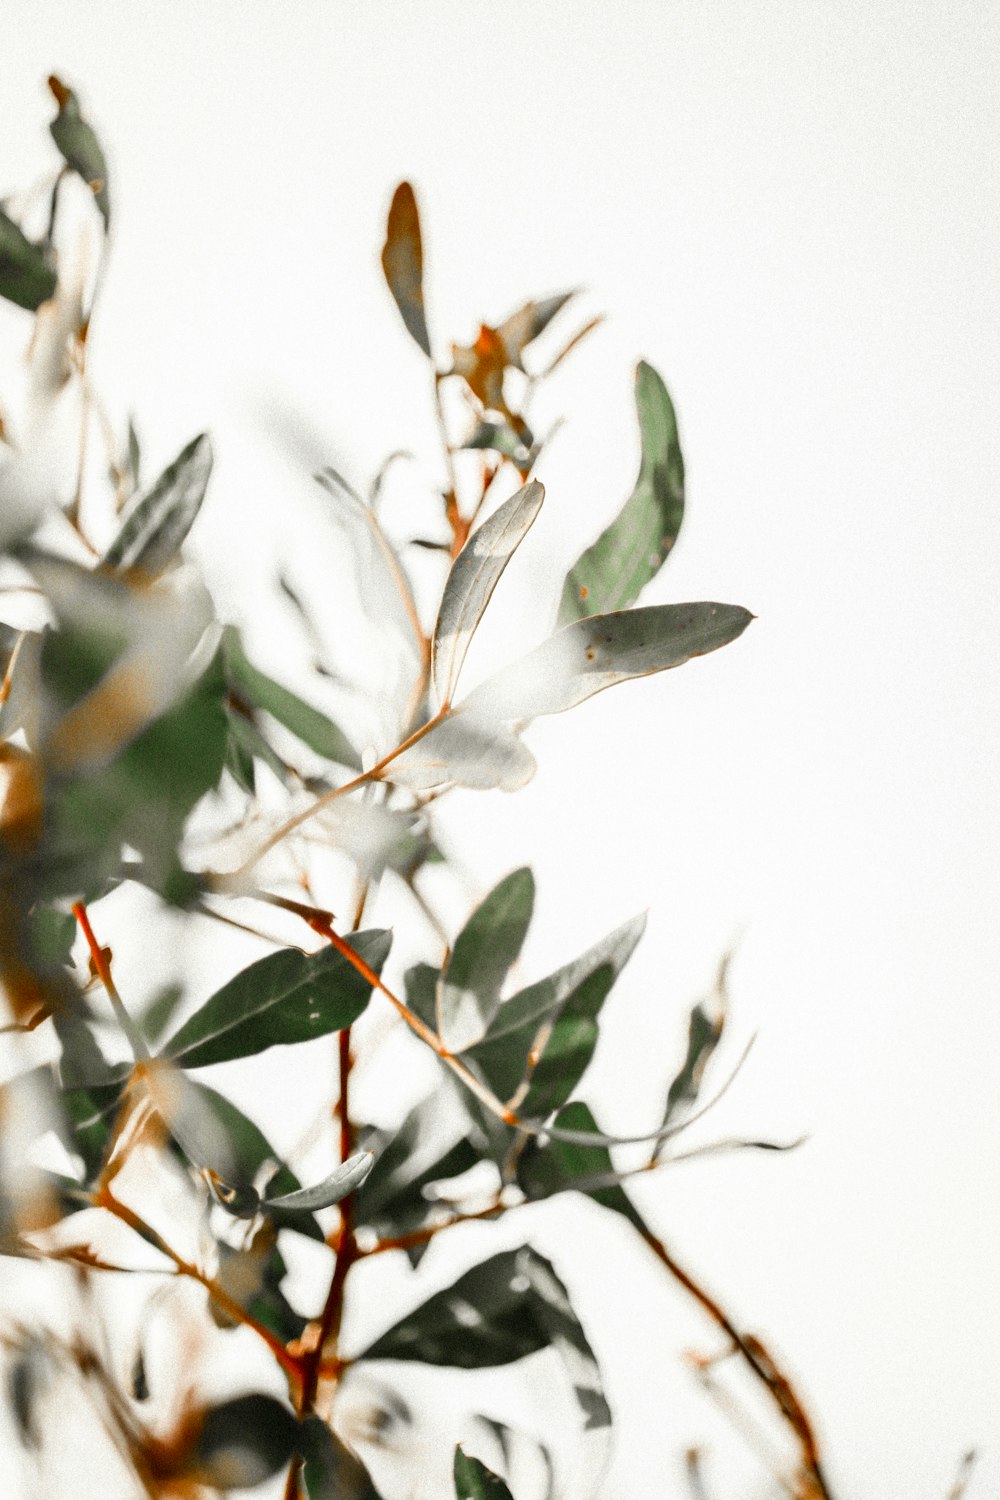 틸트 시프트 렌즈의 흰색과 갈색 잎